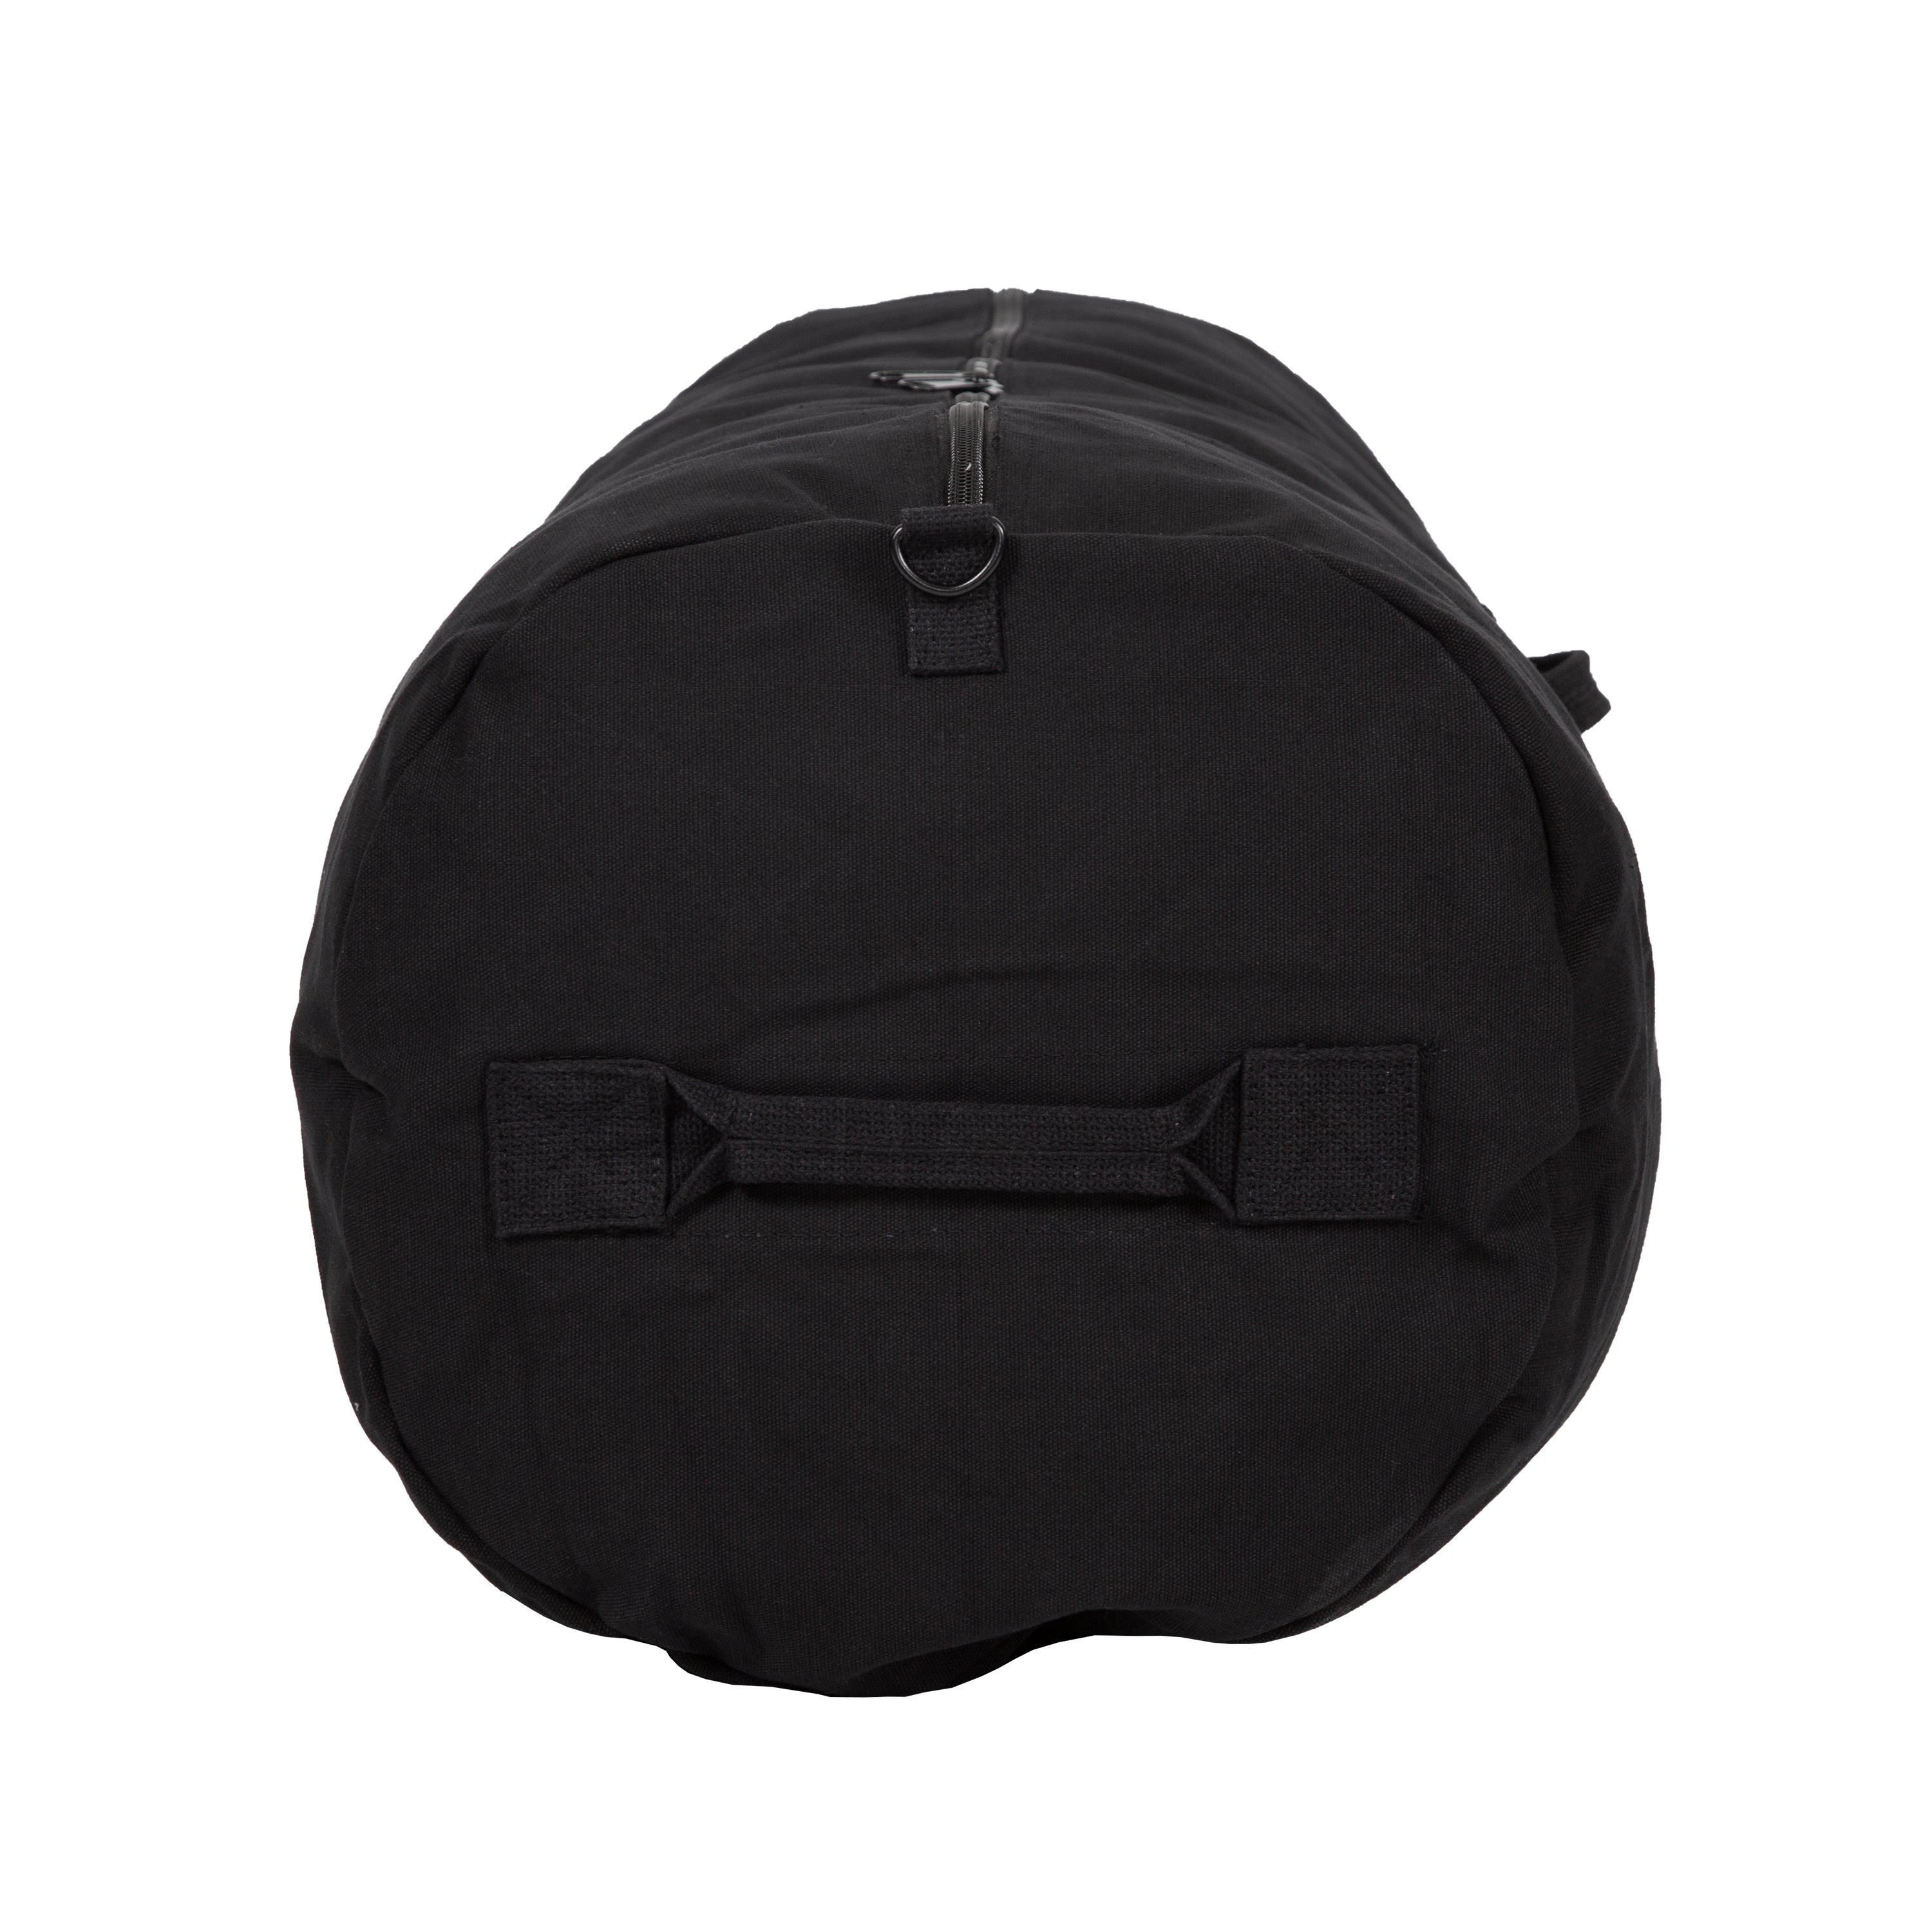 Duffel Bag With Zipper - Black - 42 In X 15 In X 15 In